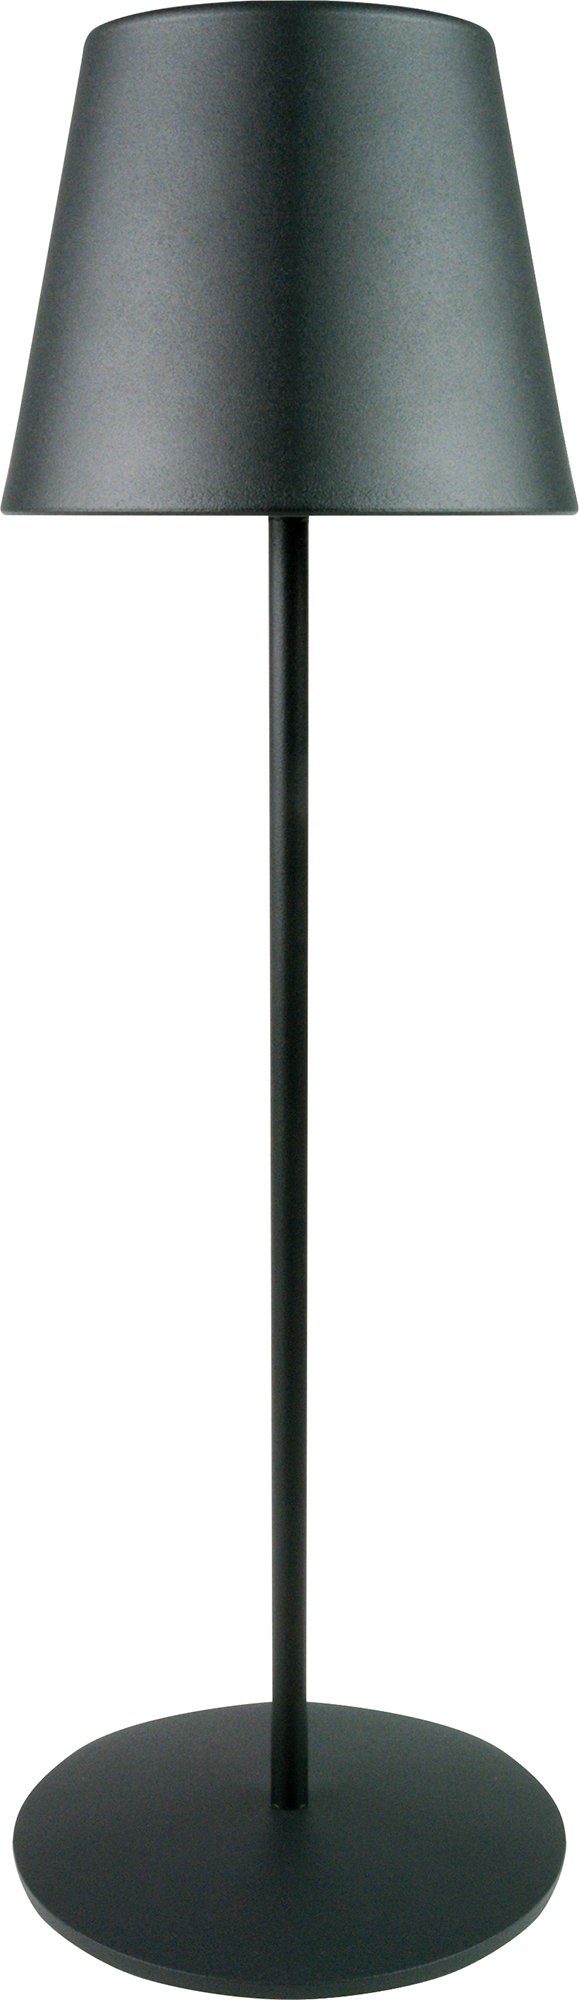 Schwaiger LED Tischleuchte OTL200 013, mit Touchpanel, IP44 schwarz